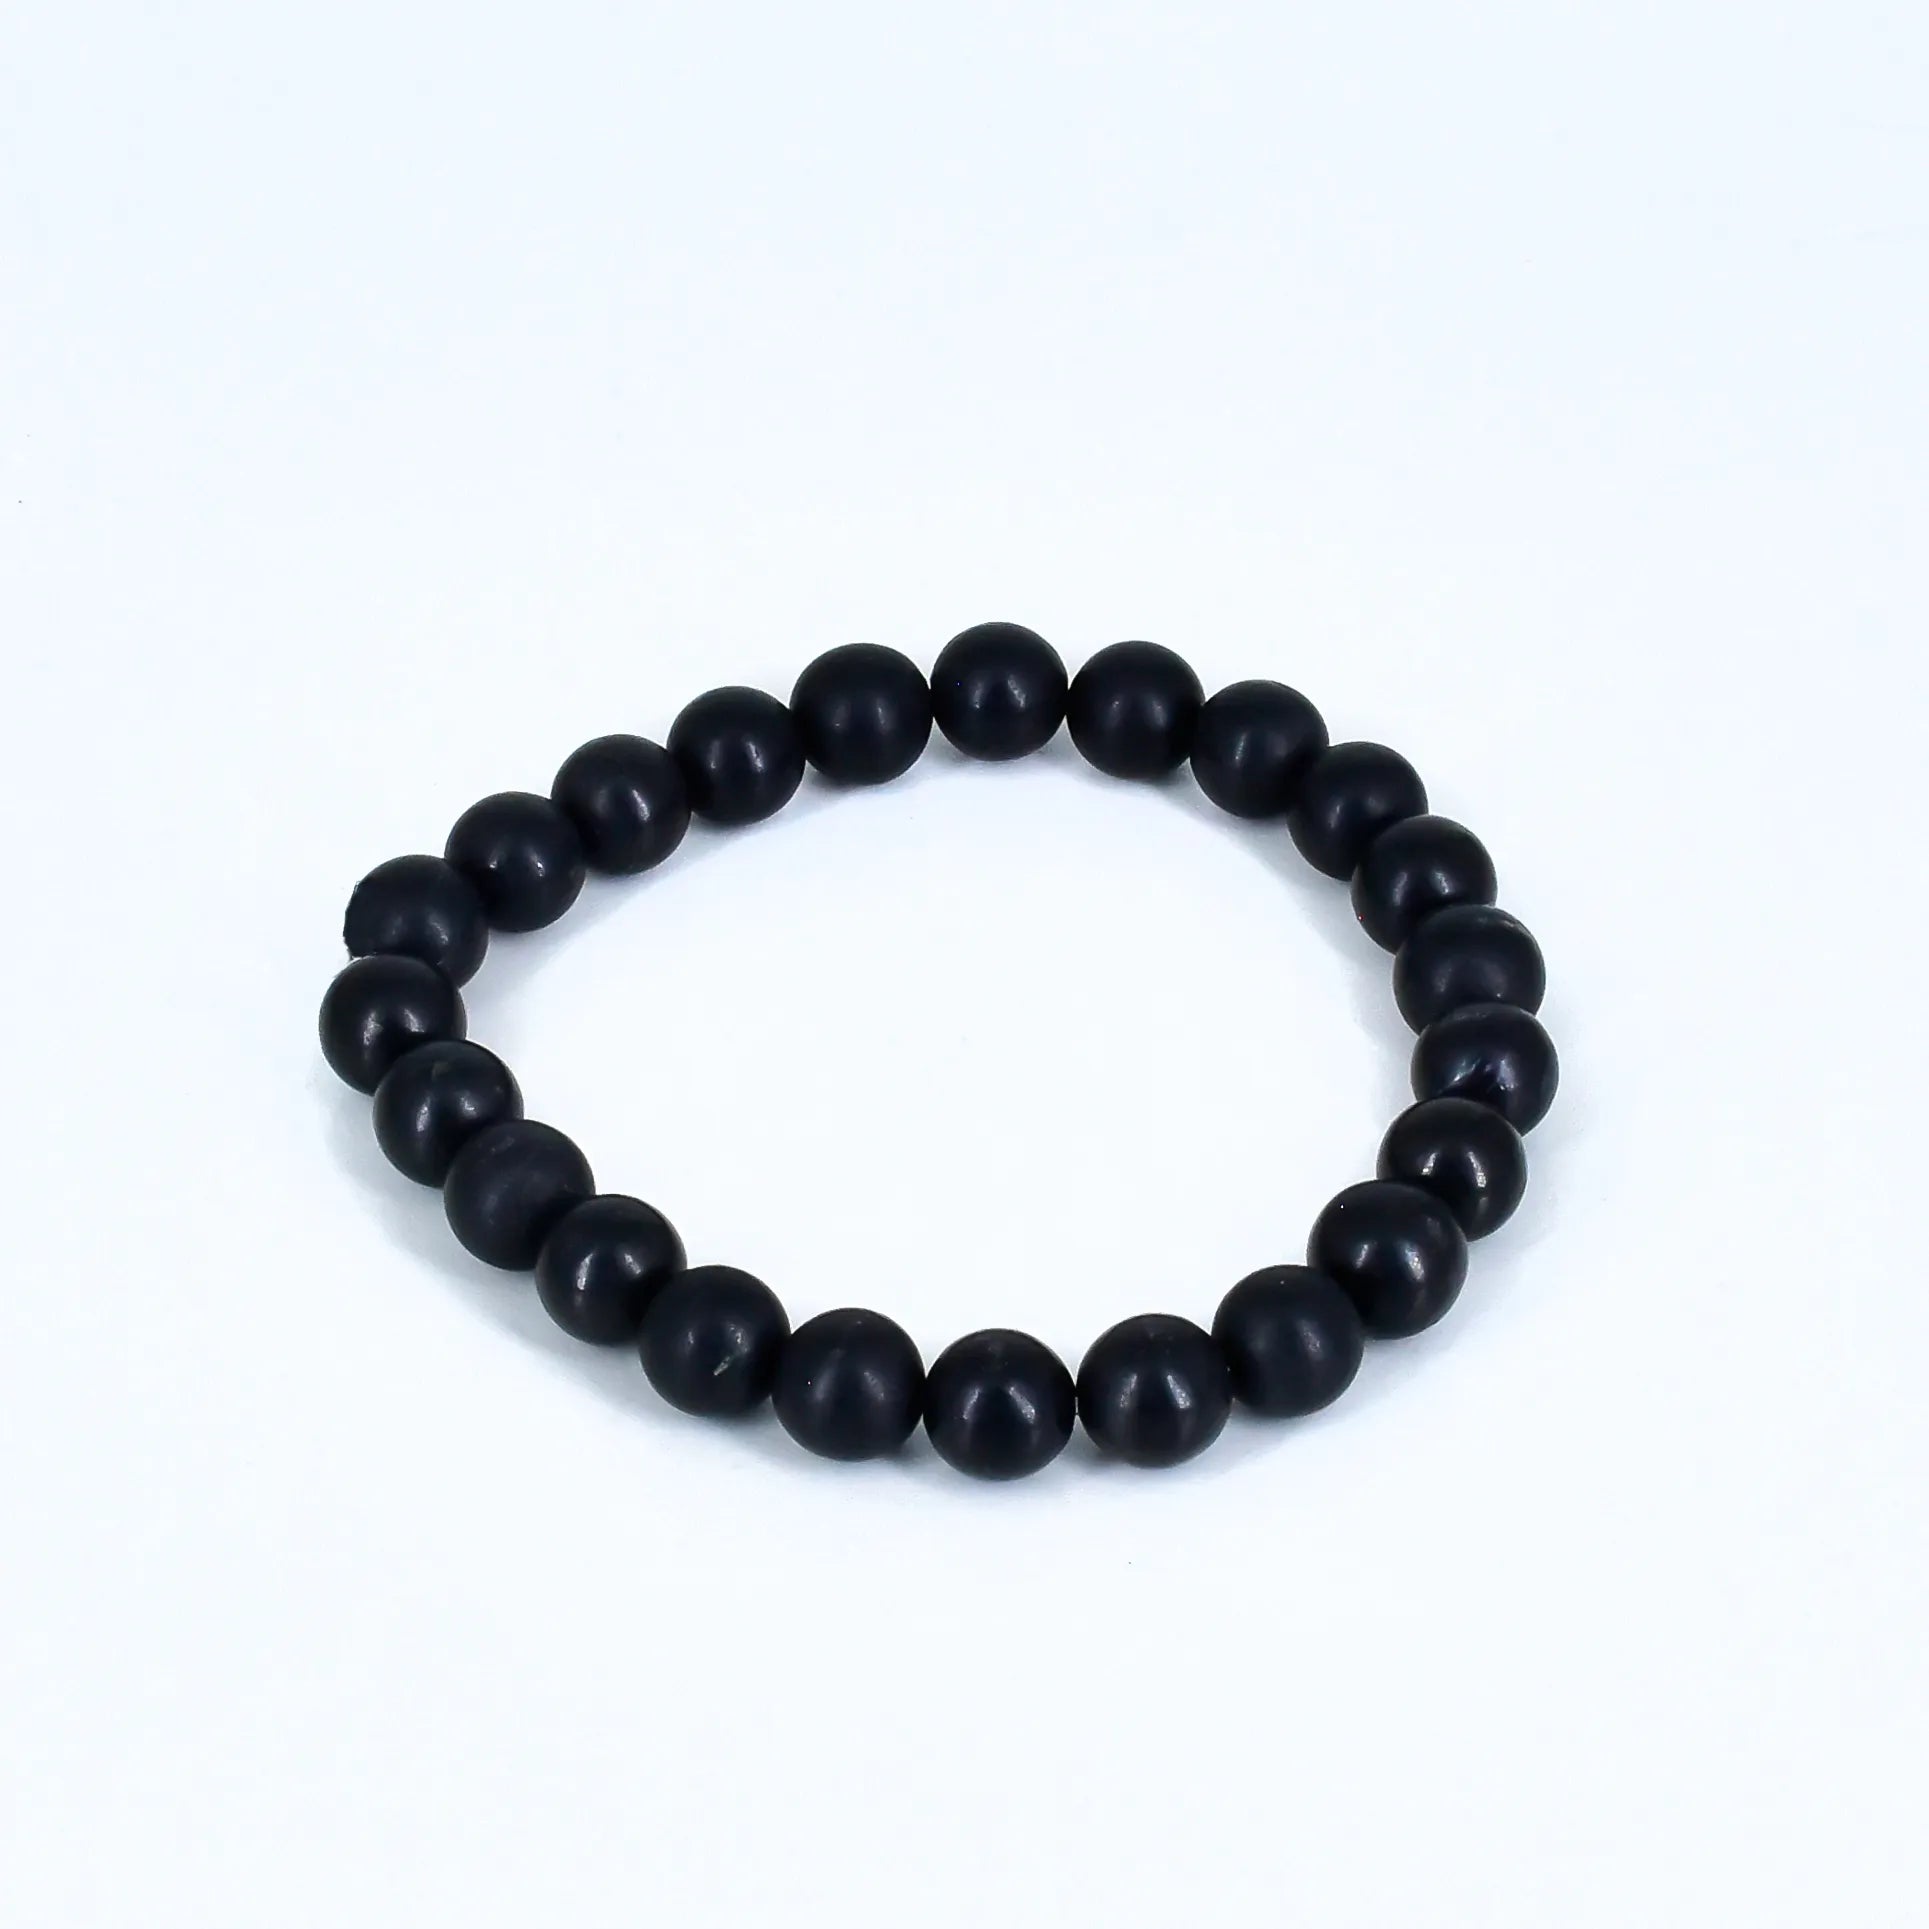 Shungite Crystal Stone Bracelet for Reiki Healing